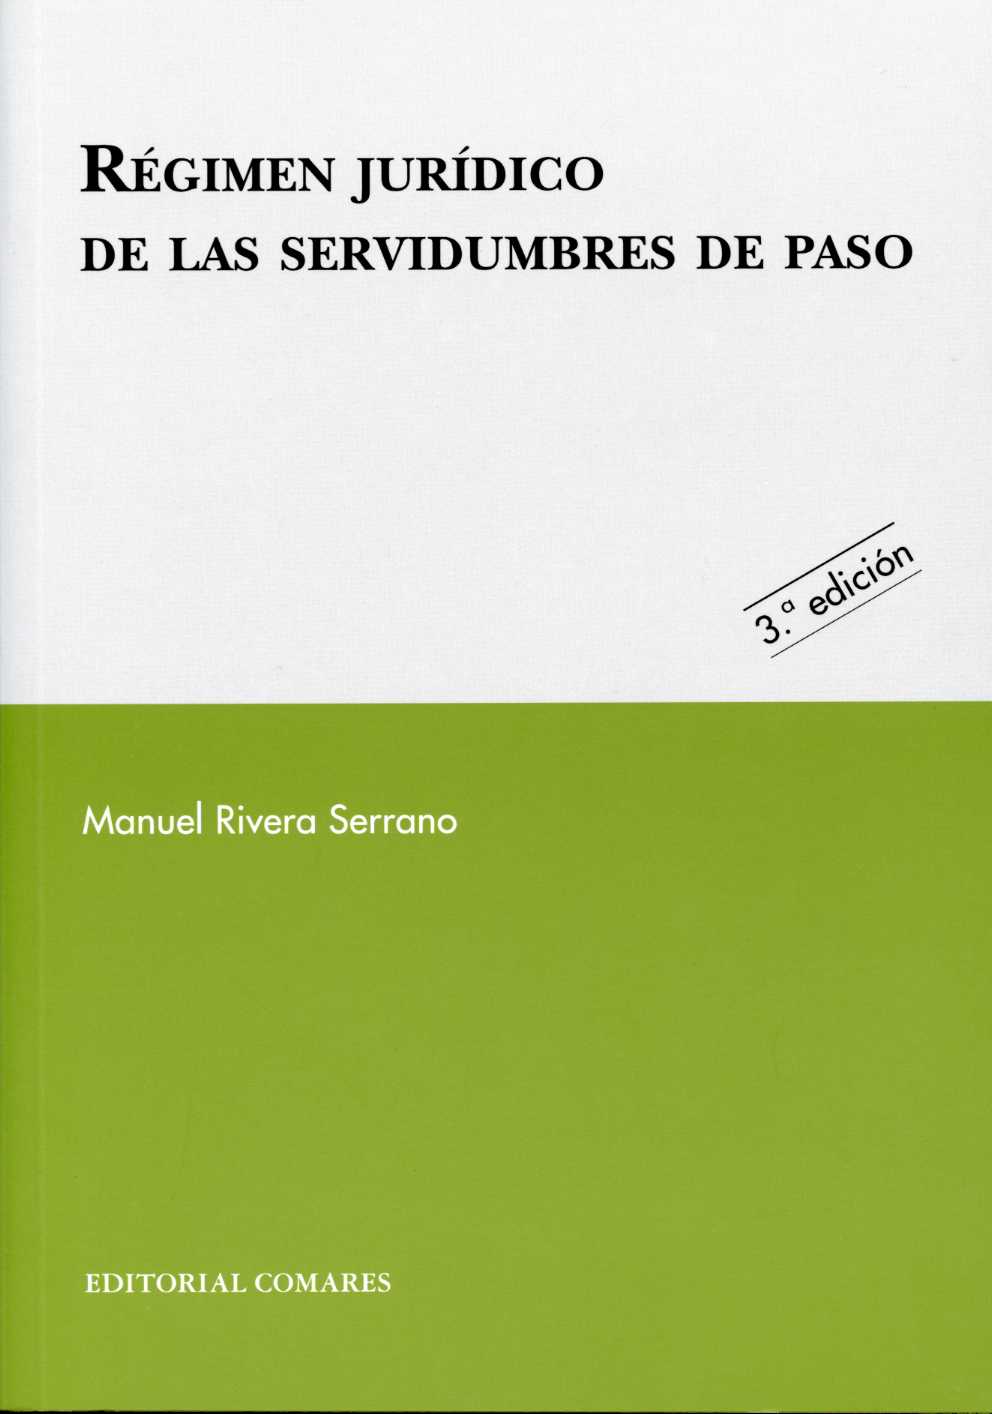 Régimen Jurídico de las Servidumbres de Paso 2009. -0